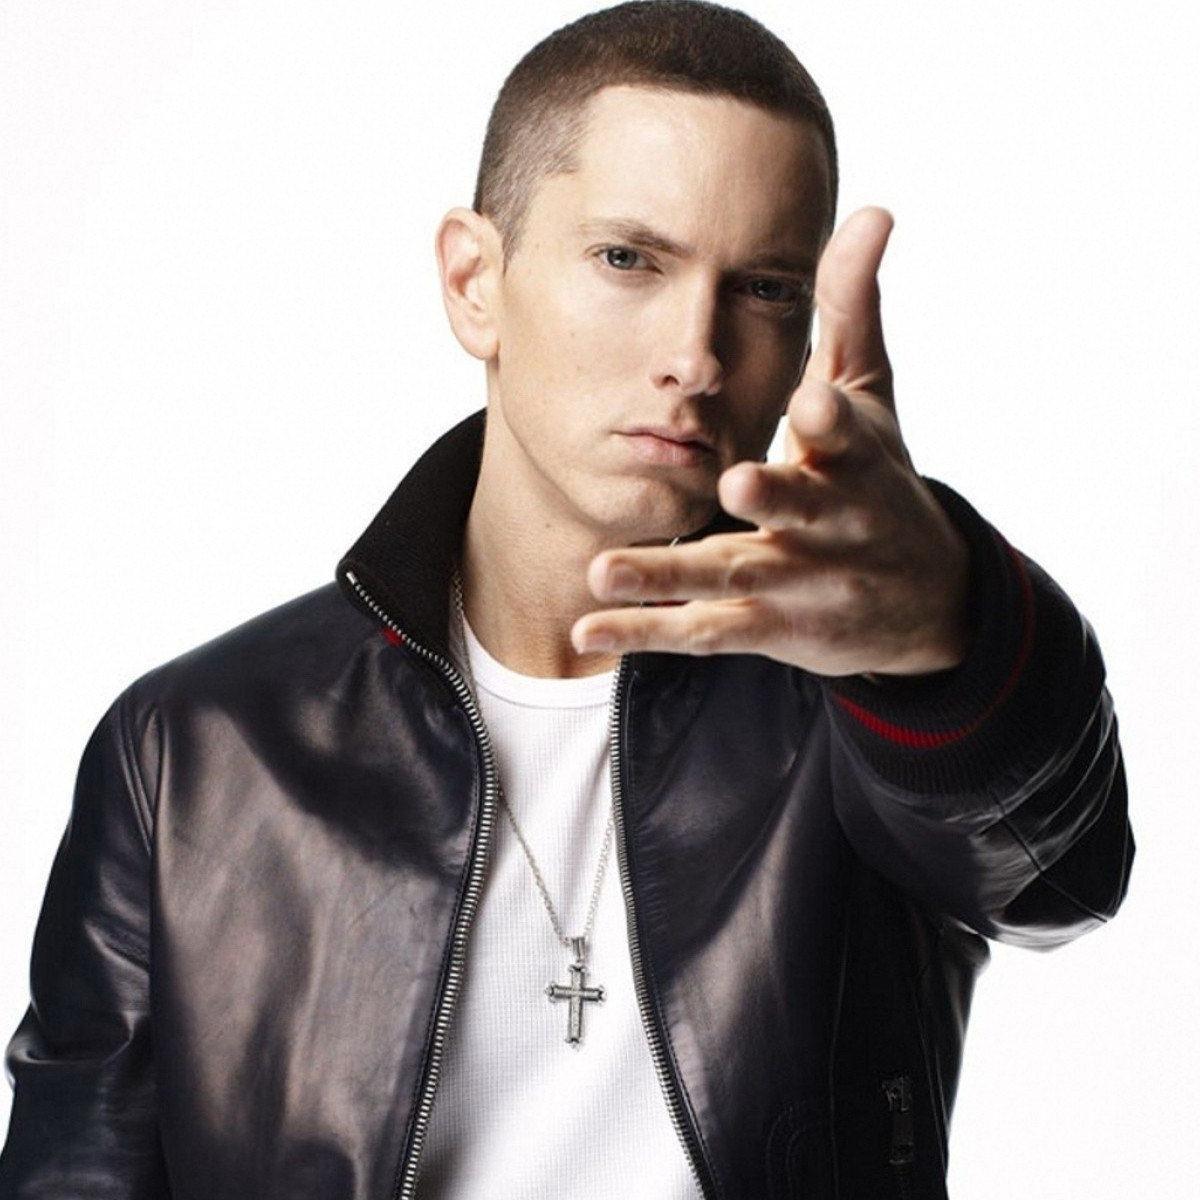 Current Pictures Of Eminem